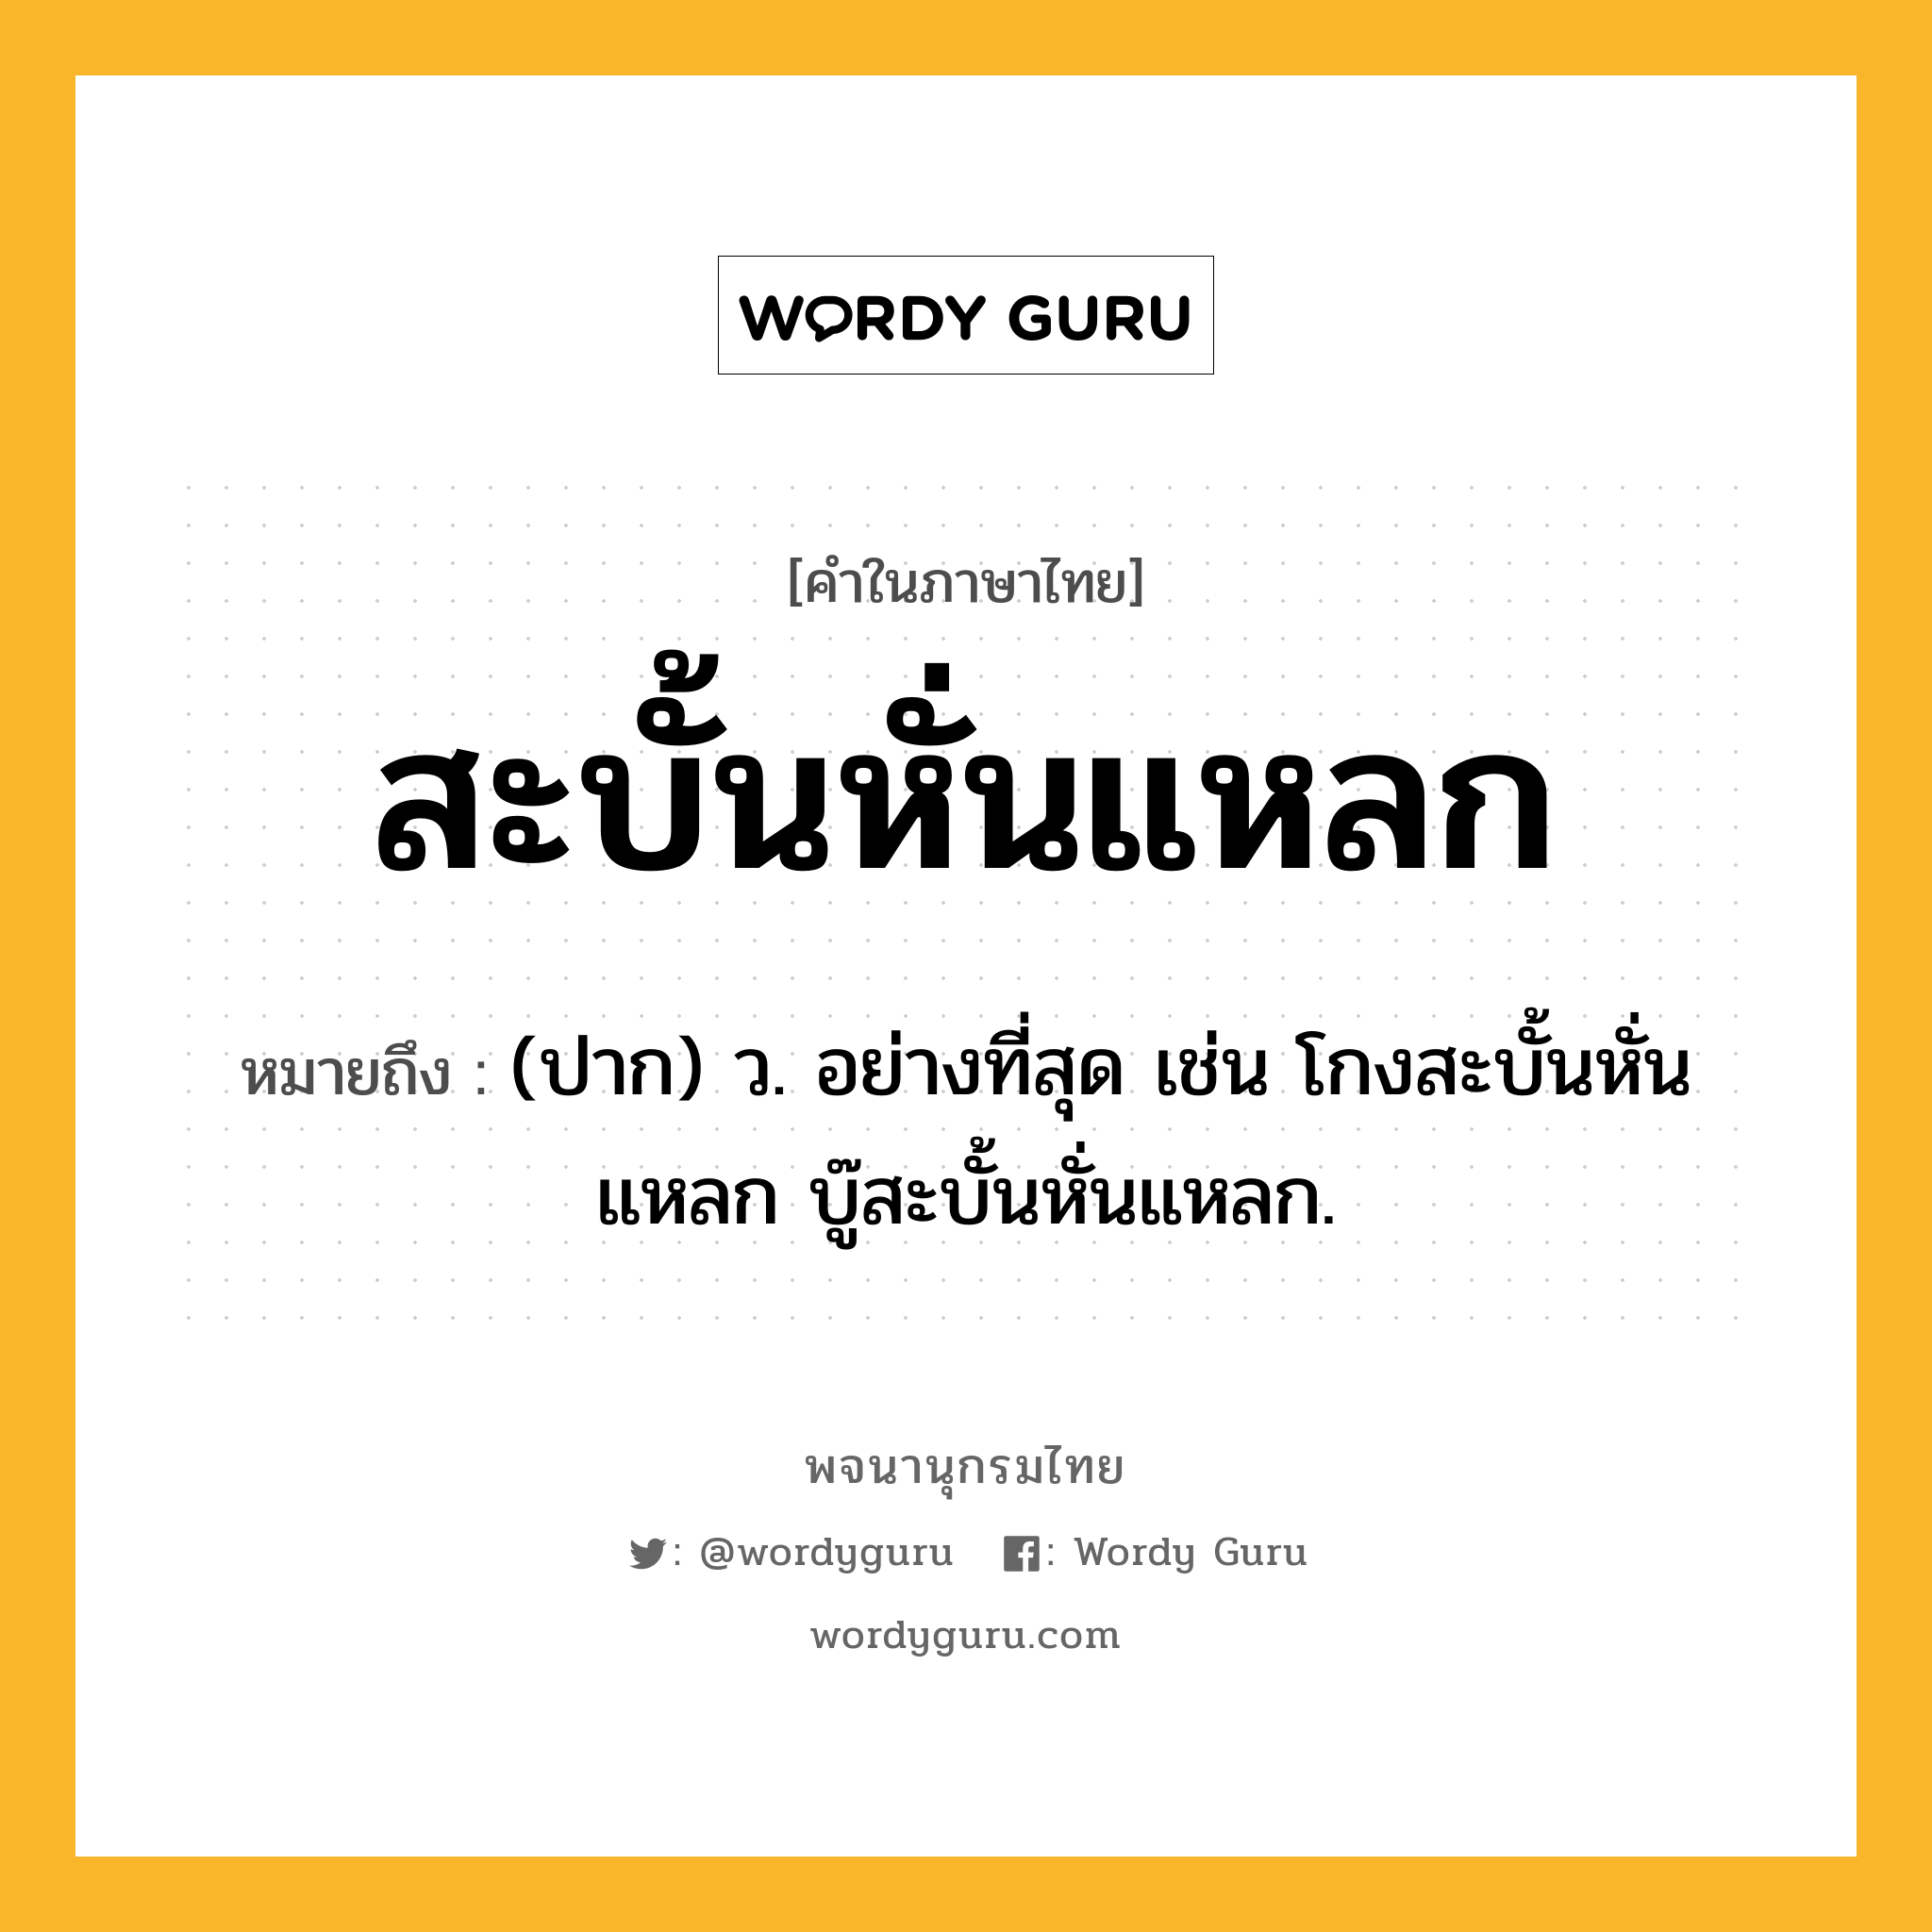 สะบั้นหั่นแหลก หมายถึงอะไร?, คำในภาษาไทย สะบั้นหั่นแหลก หมายถึง (ปาก) ว. อย่างที่สุด เช่น โกงสะบั้นหั่นแหลก บู๊สะบั้นหั่นแหลก.